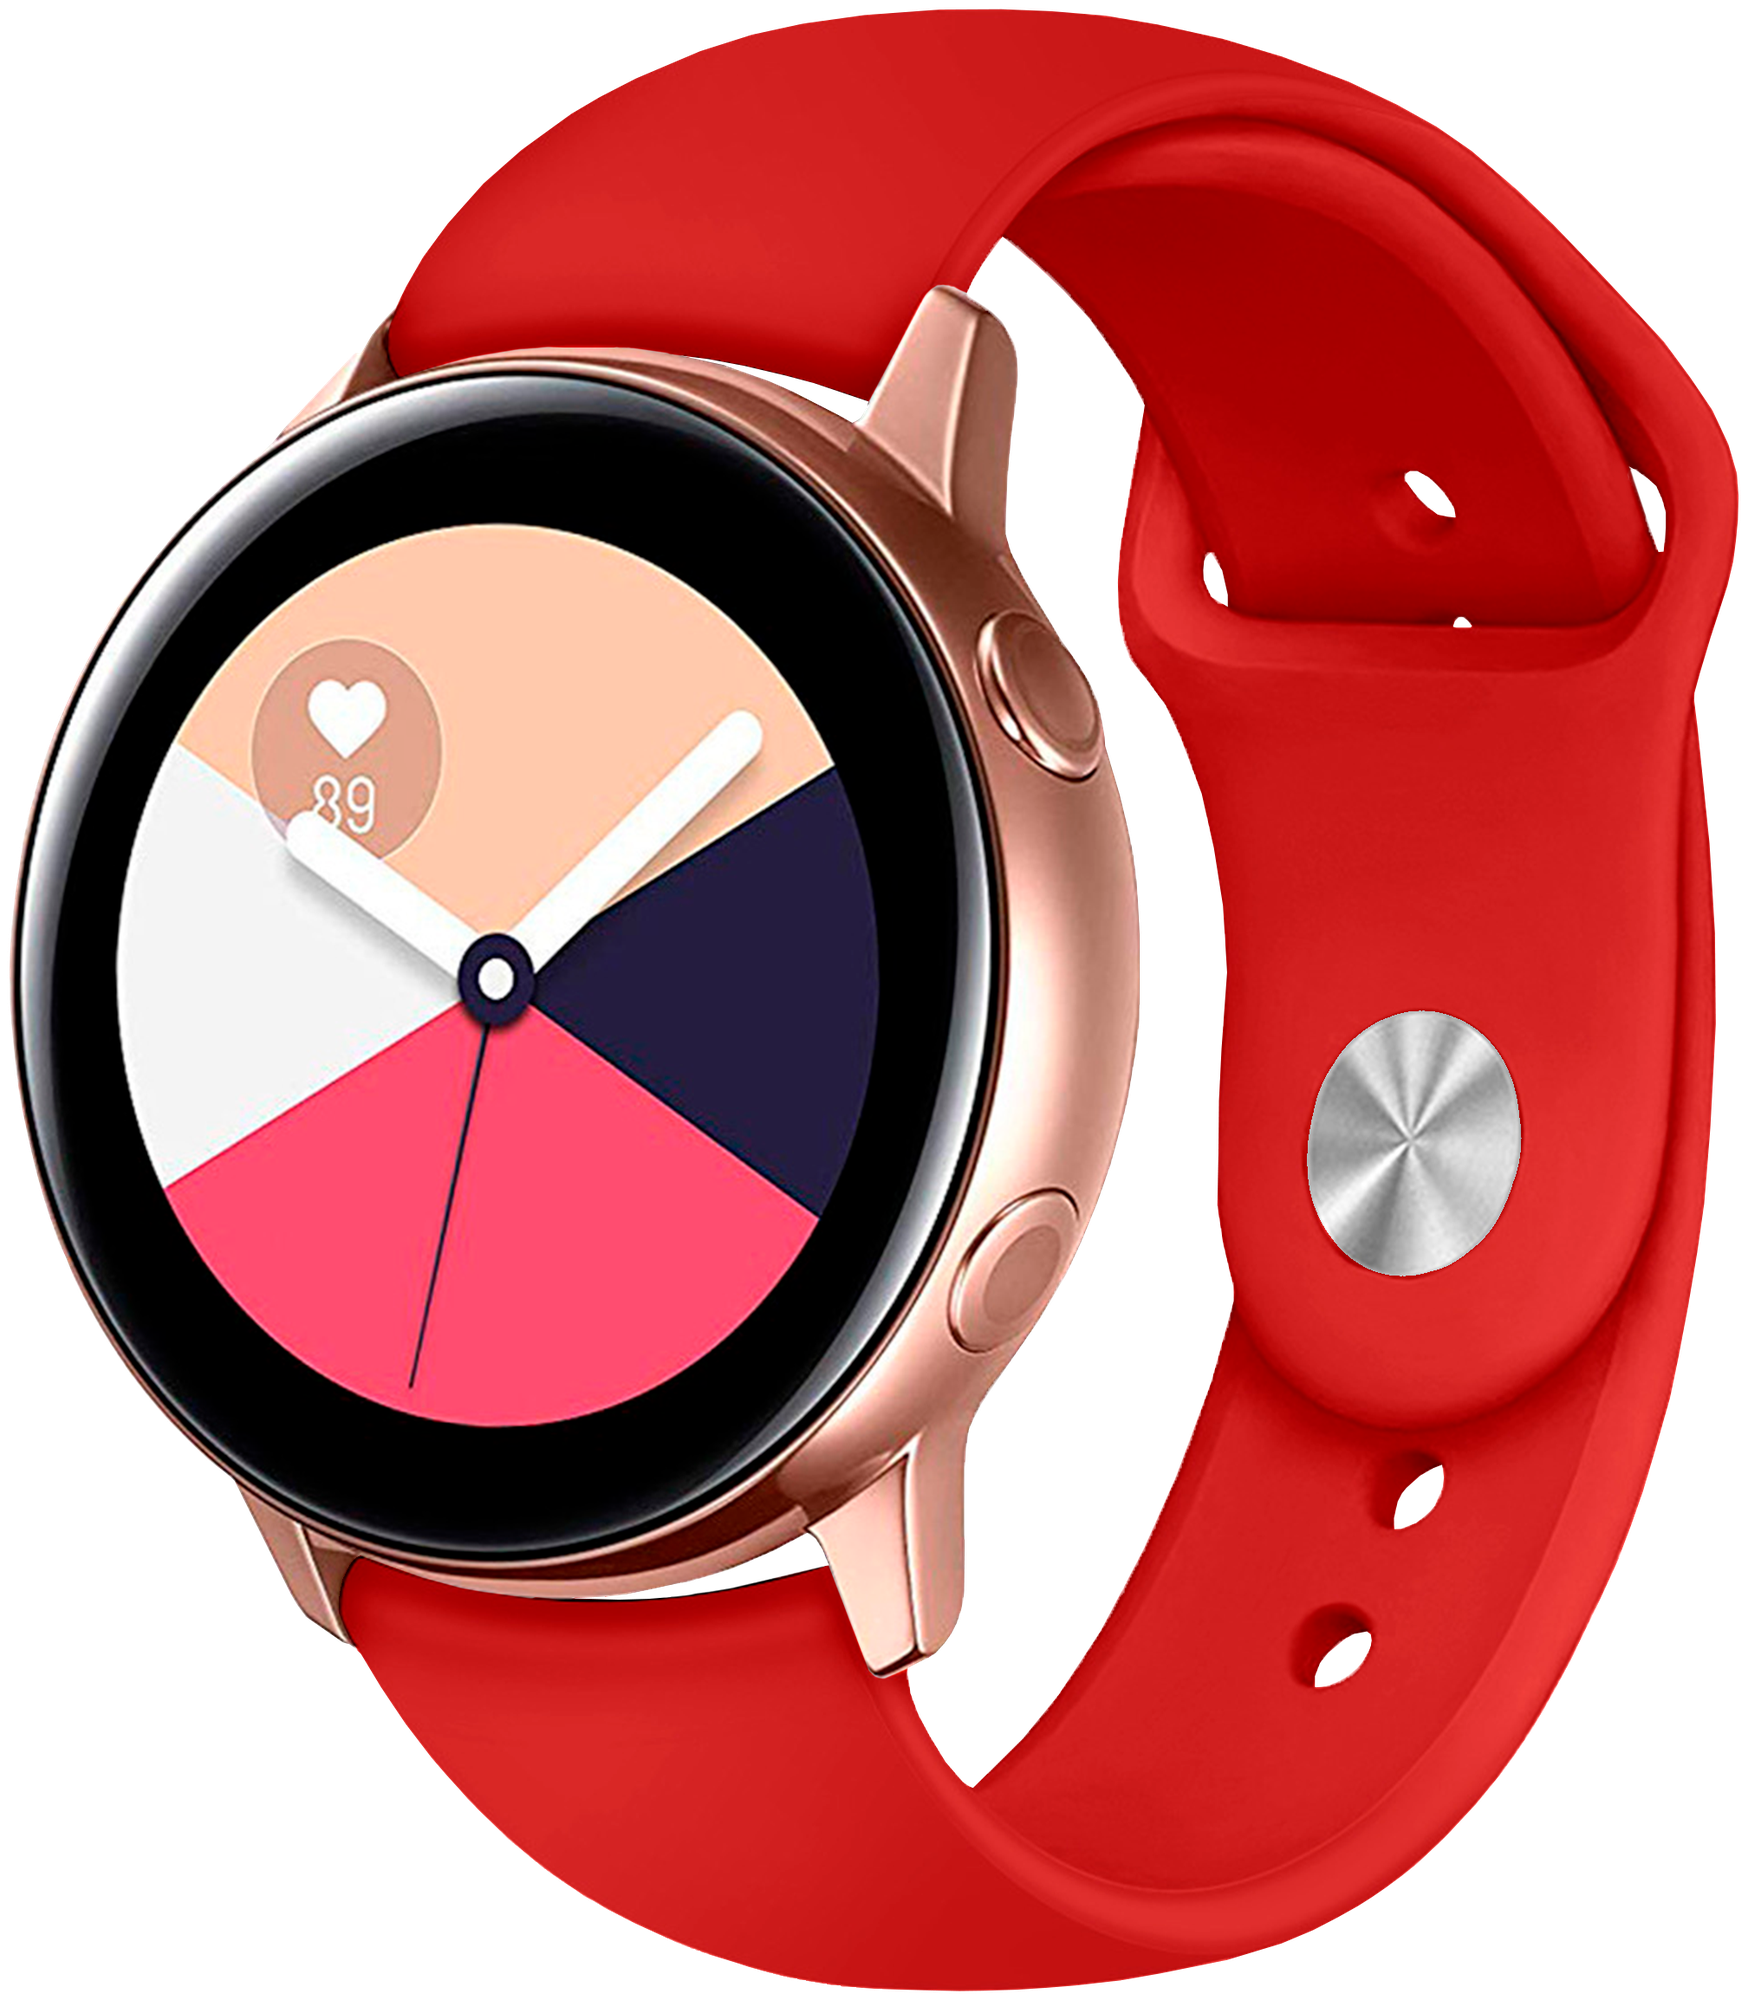 Силиконовый ремешок для Samsung Galaxy Watch 20mm/ Huawei Watch / Сменный браслет для умныхарт часов Самсунг Галакси/ Хуавей Вотч Красный